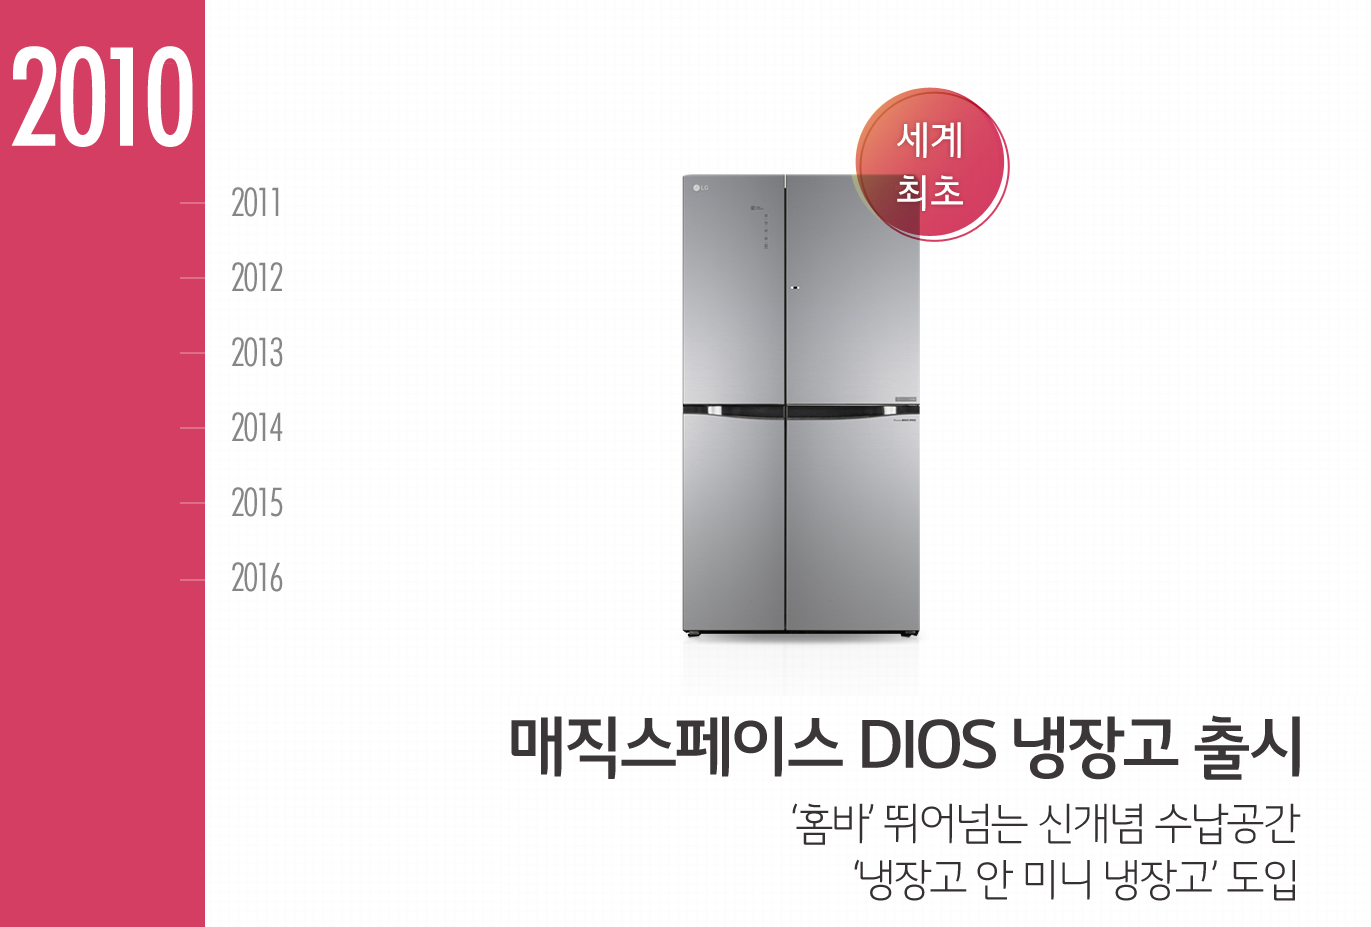 2010년, 매직스페이스 냉장고로 효율적인 주방문화를 선도